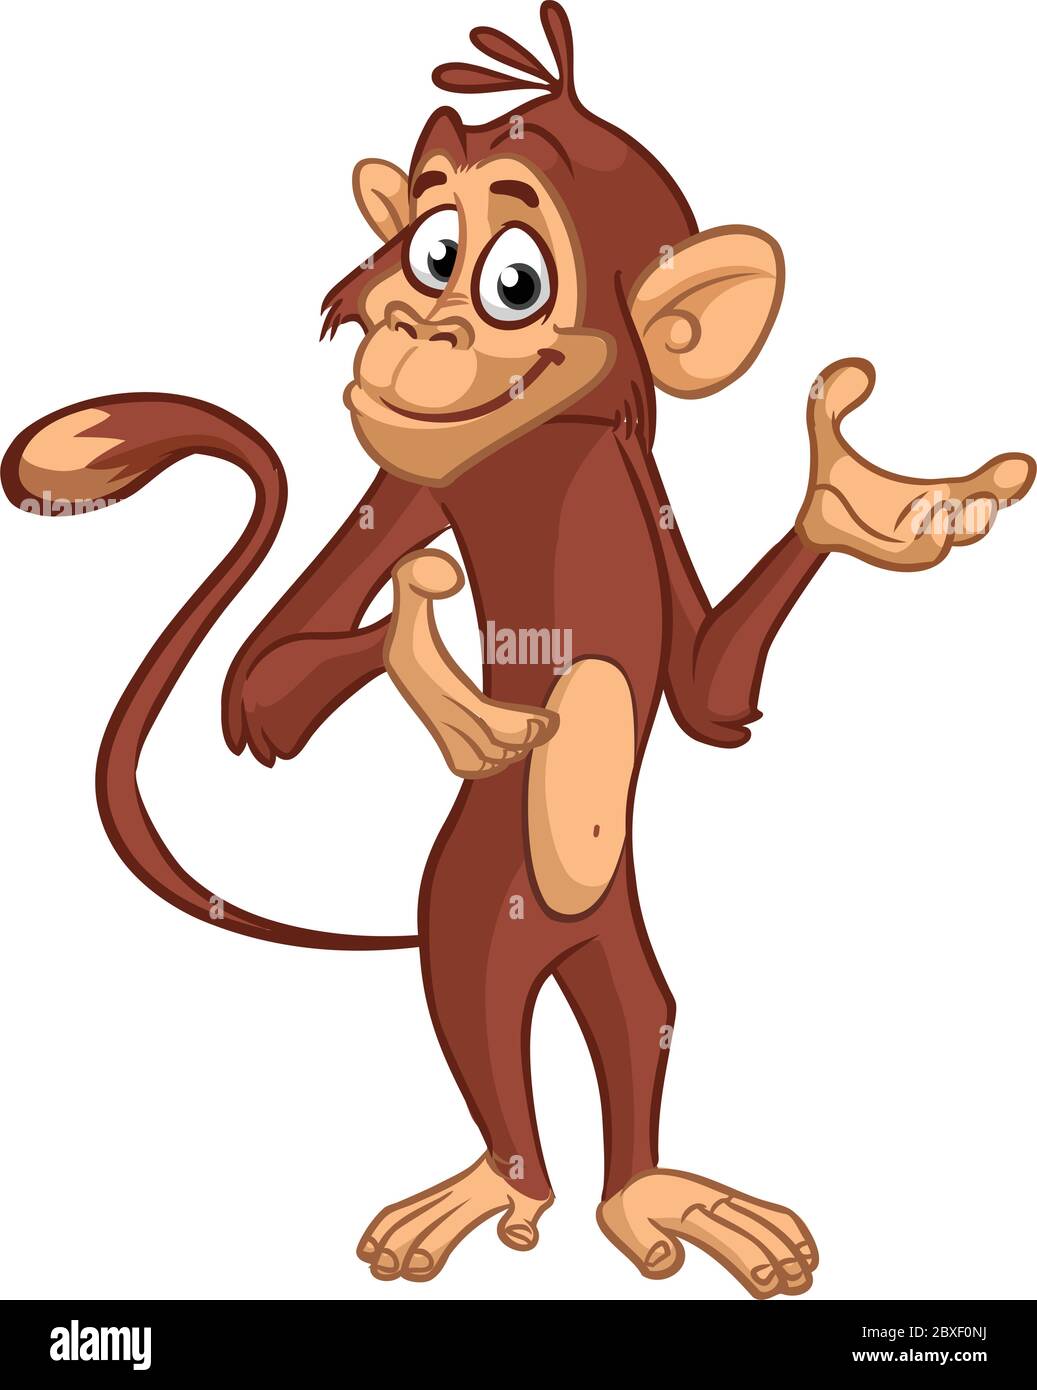 Cartoon funny monkey chimpanzee illustration isolated on white ...